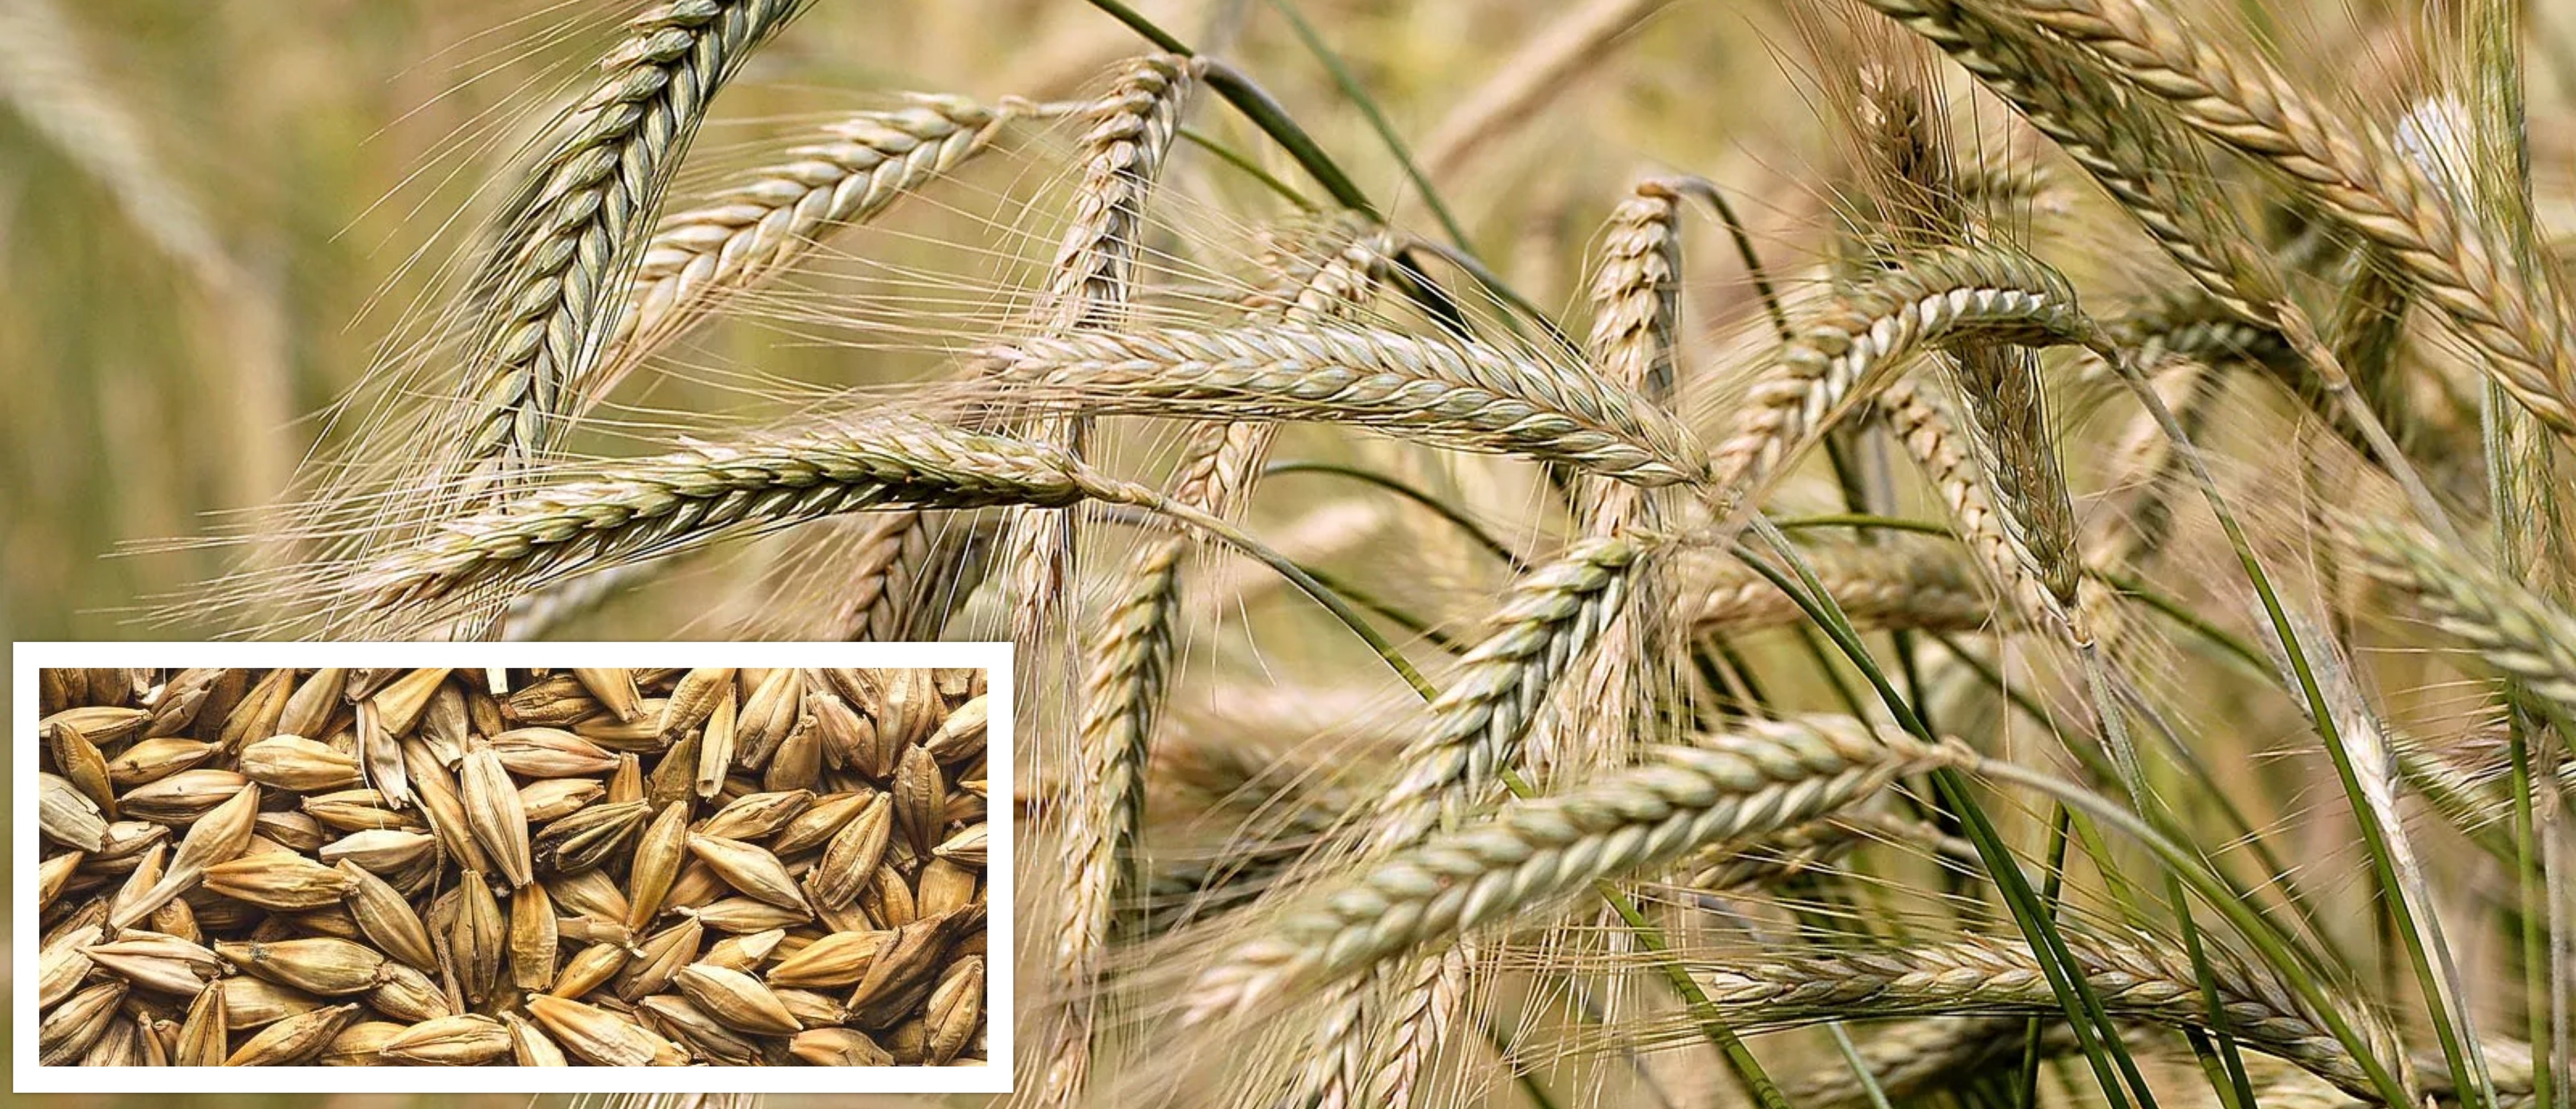 2901-barley.jpg    